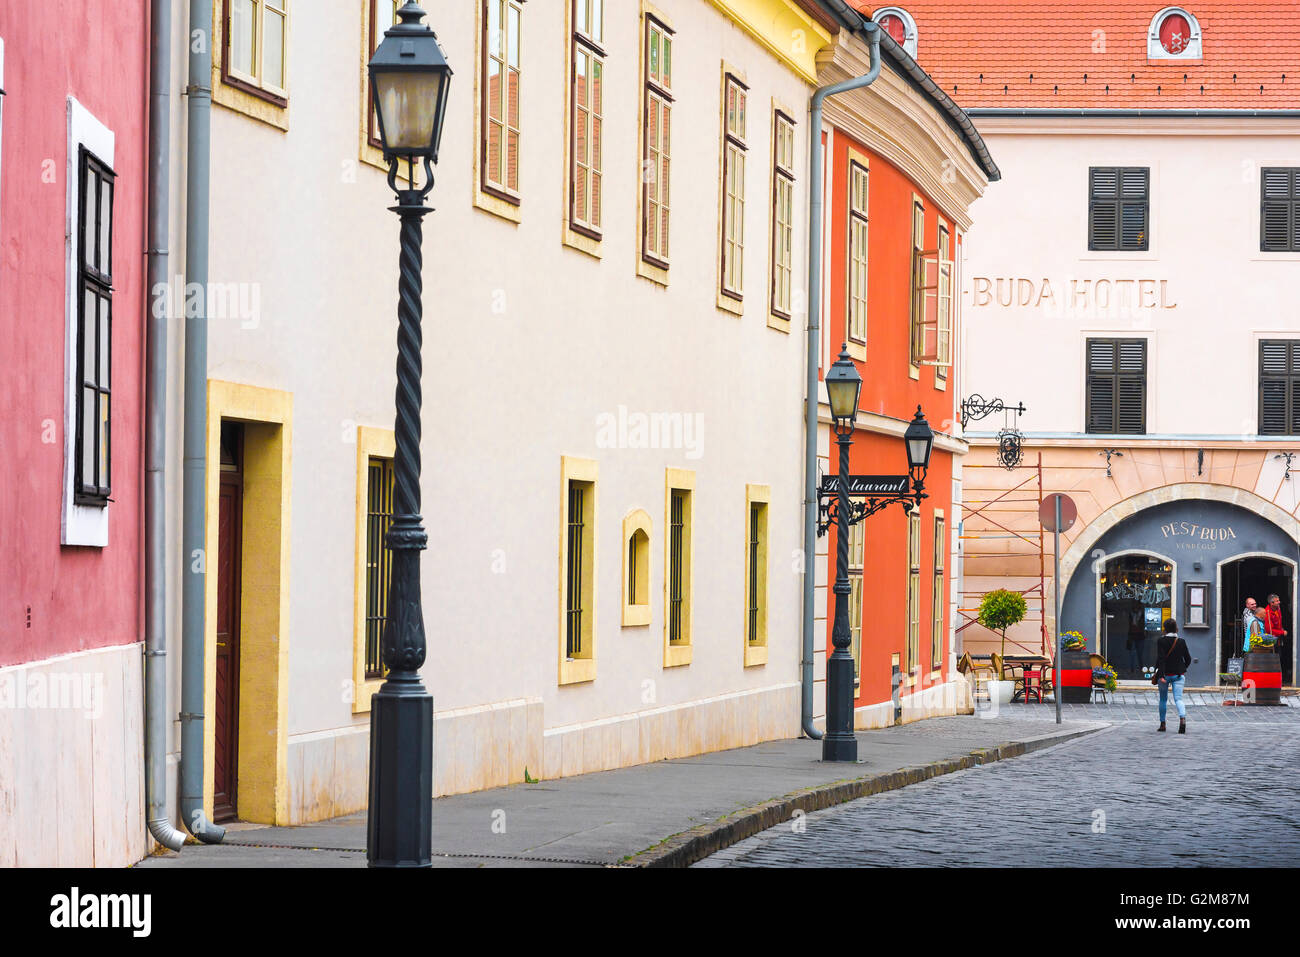 Rue baroque hongroise, vue sur l'élégante architecture de la fin du 17th siècle dans le quartier du château du Var à Budapest, Hongrie. Banque D'Images